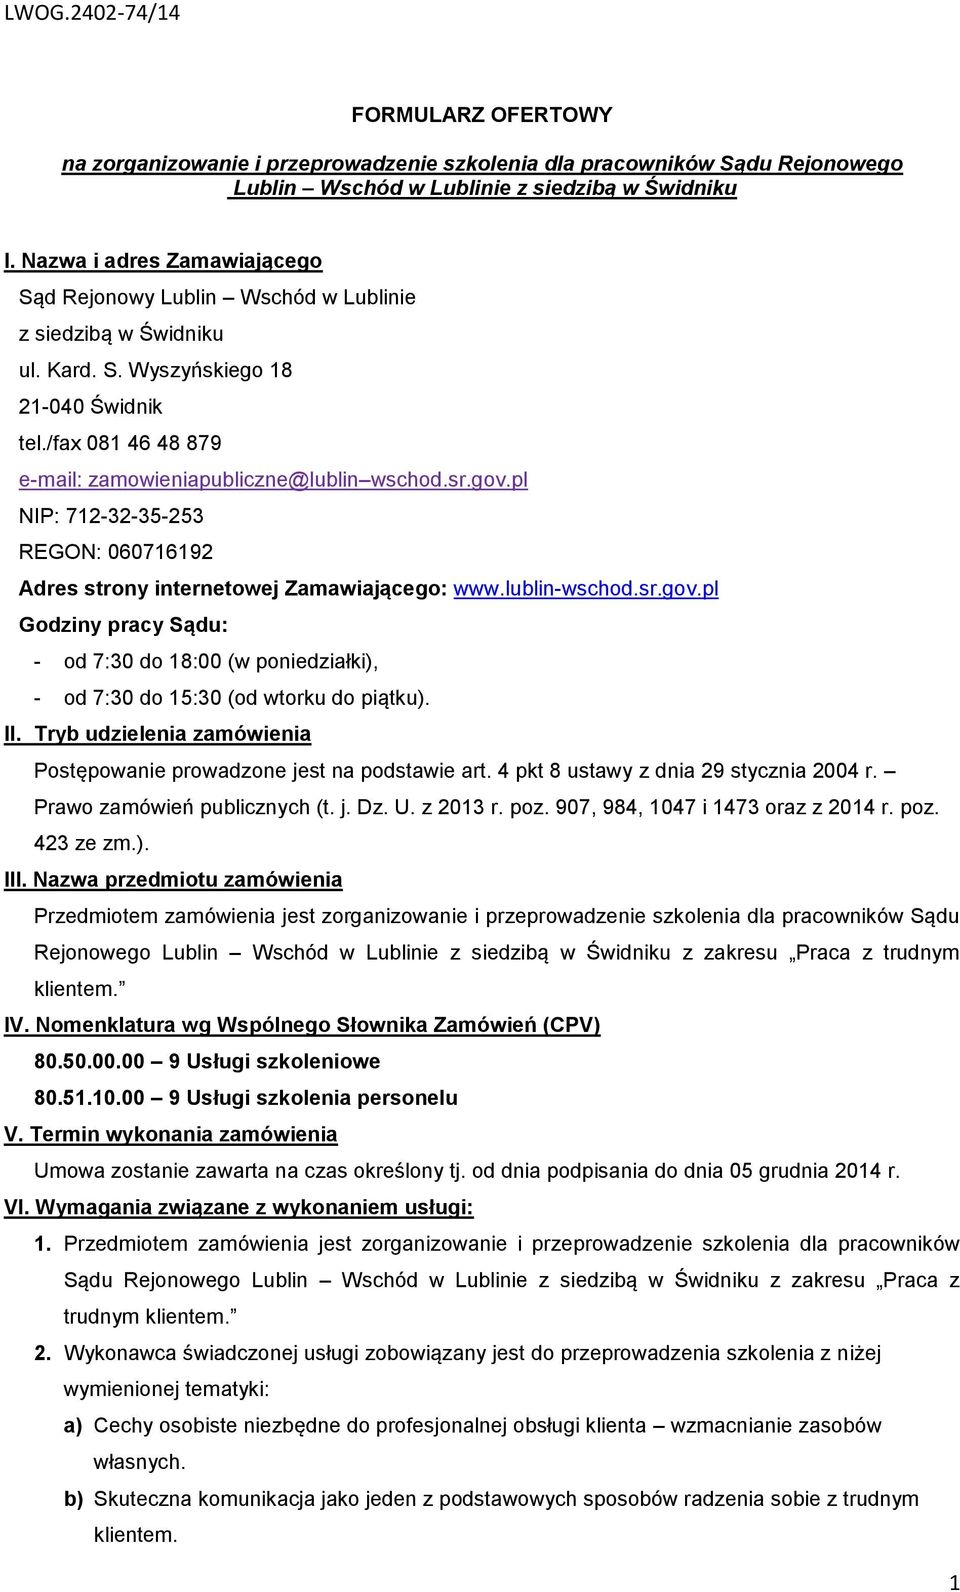 gov.pl NIP: 712-32-35-253 REGON: 060716192 Adres strony internetowej Zamawiającego: www.lublin-wschod.sr.gov.pl Godziny pracy Sądu: - od 7:30 do 18:00 (w poniedziałki), - od 7:30 do 15:30 (od wtorku do piątku).